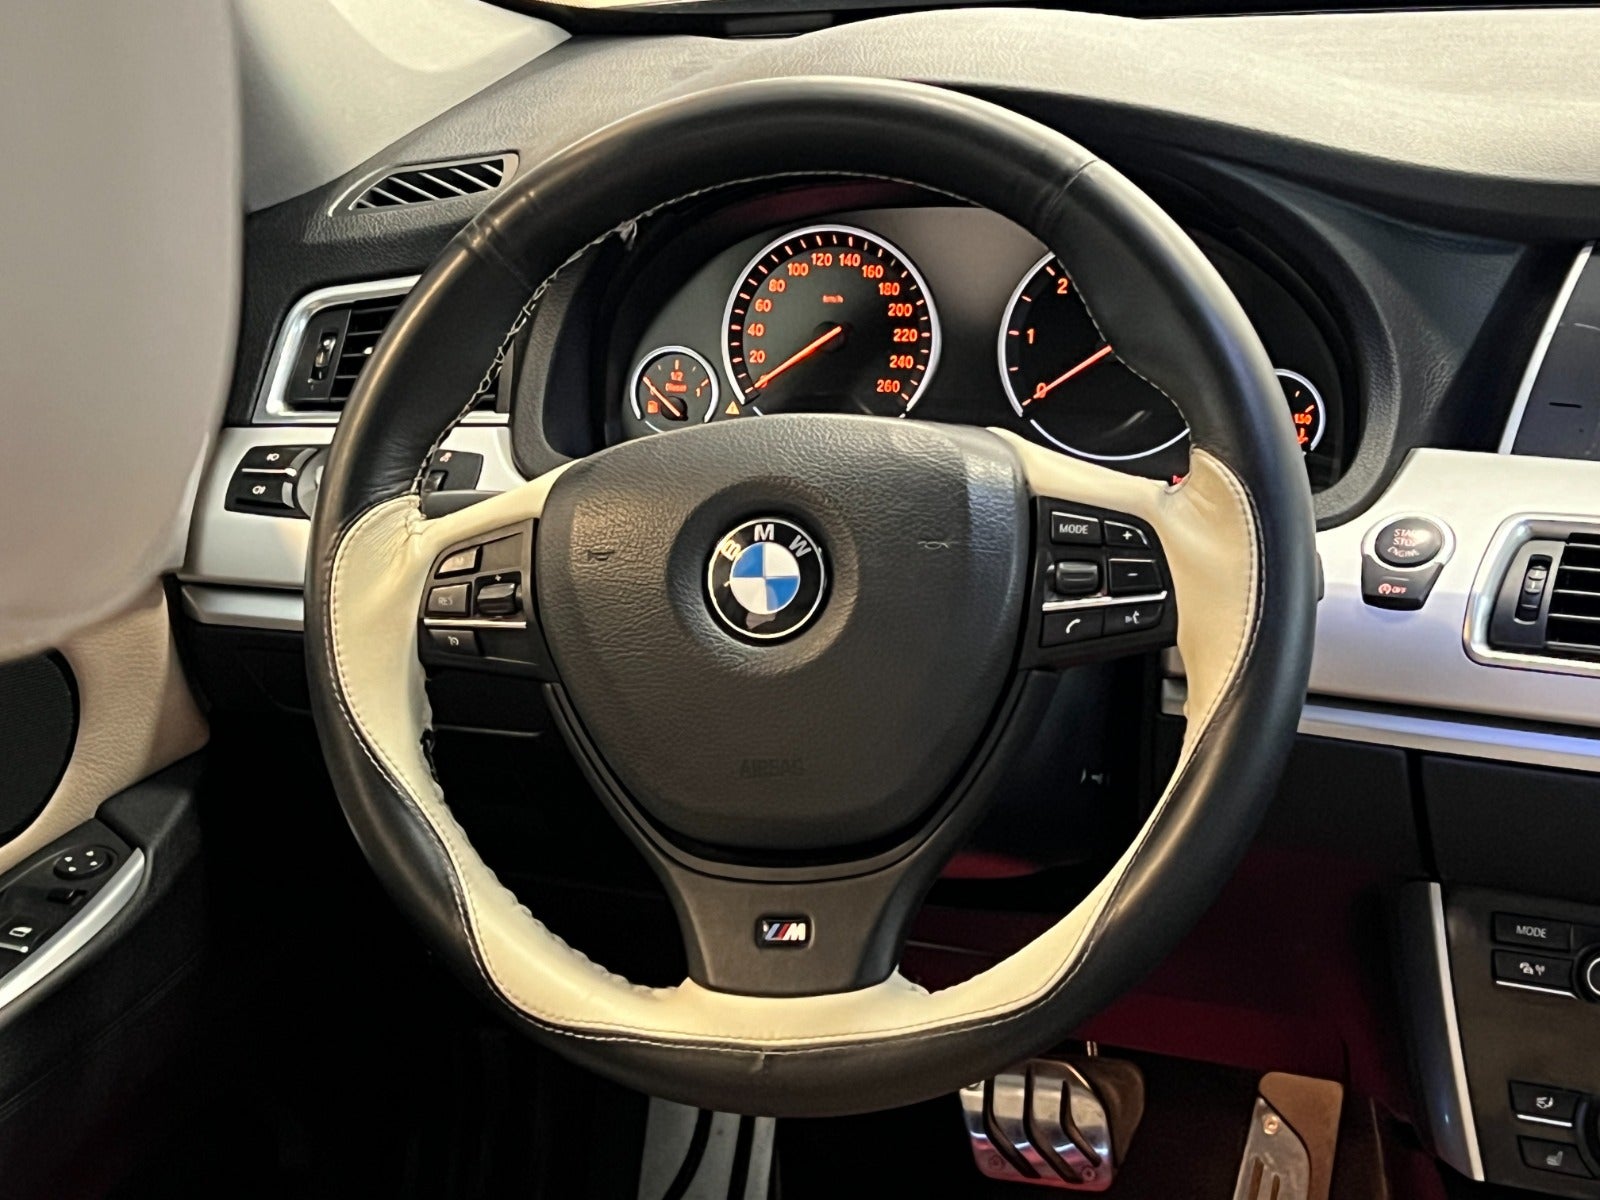 BMW 520d 2012